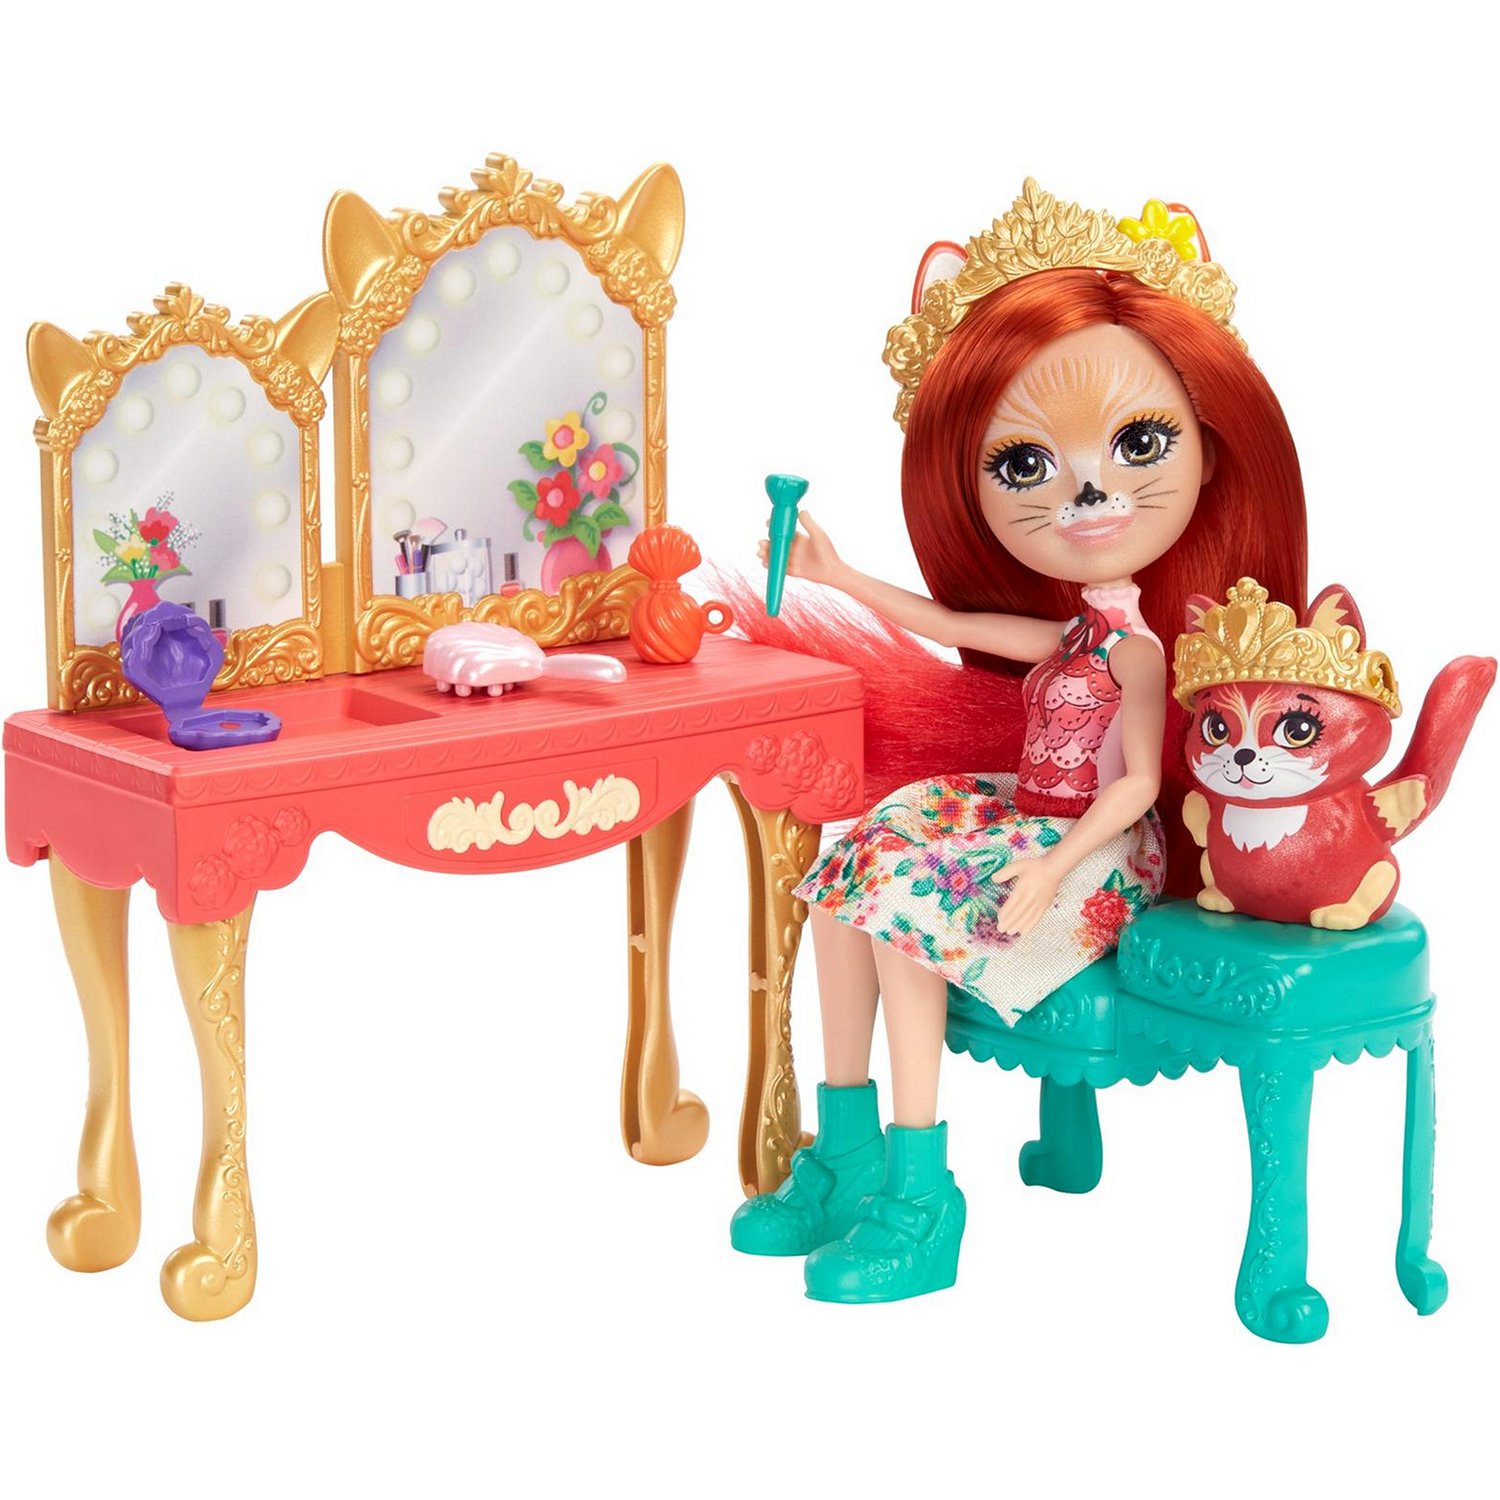 Набор игровой Enchantimals кукла+питомец с аксессуарами Викторианский туалетный столик GYJ05